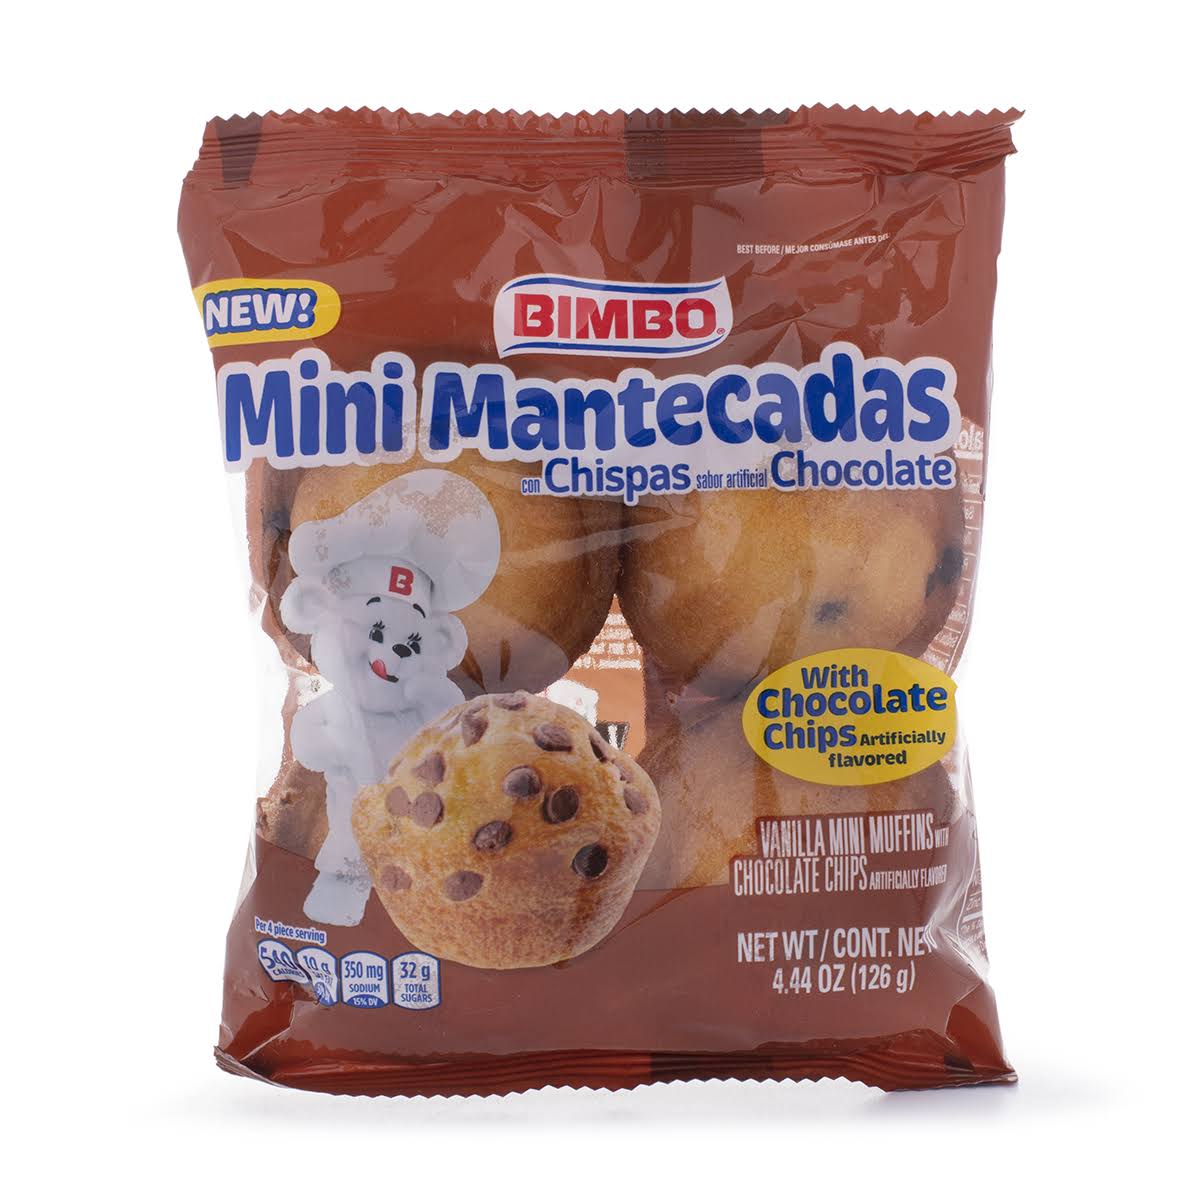 Bimbo Mini Mantecadas Vanilla Chocolate Chip Muffins, 4 Count